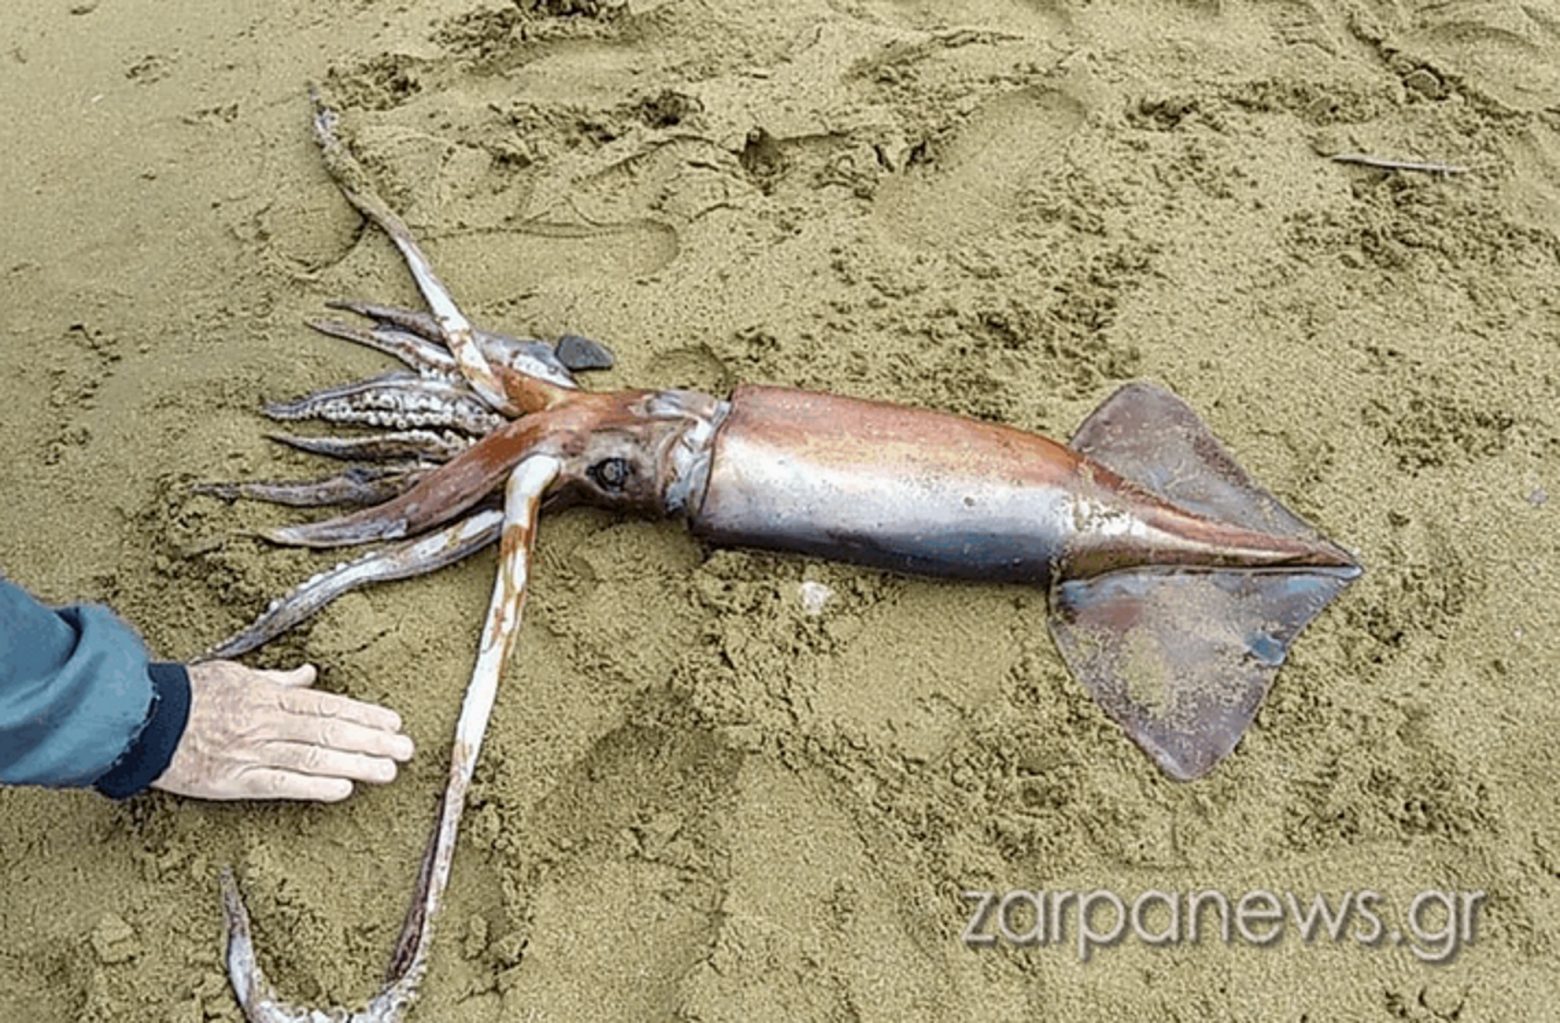 Χανιά - Θράψαλο ενός μέτρου βρέθηκε σε παραλία - Δείτε εικόνες & βίντεο